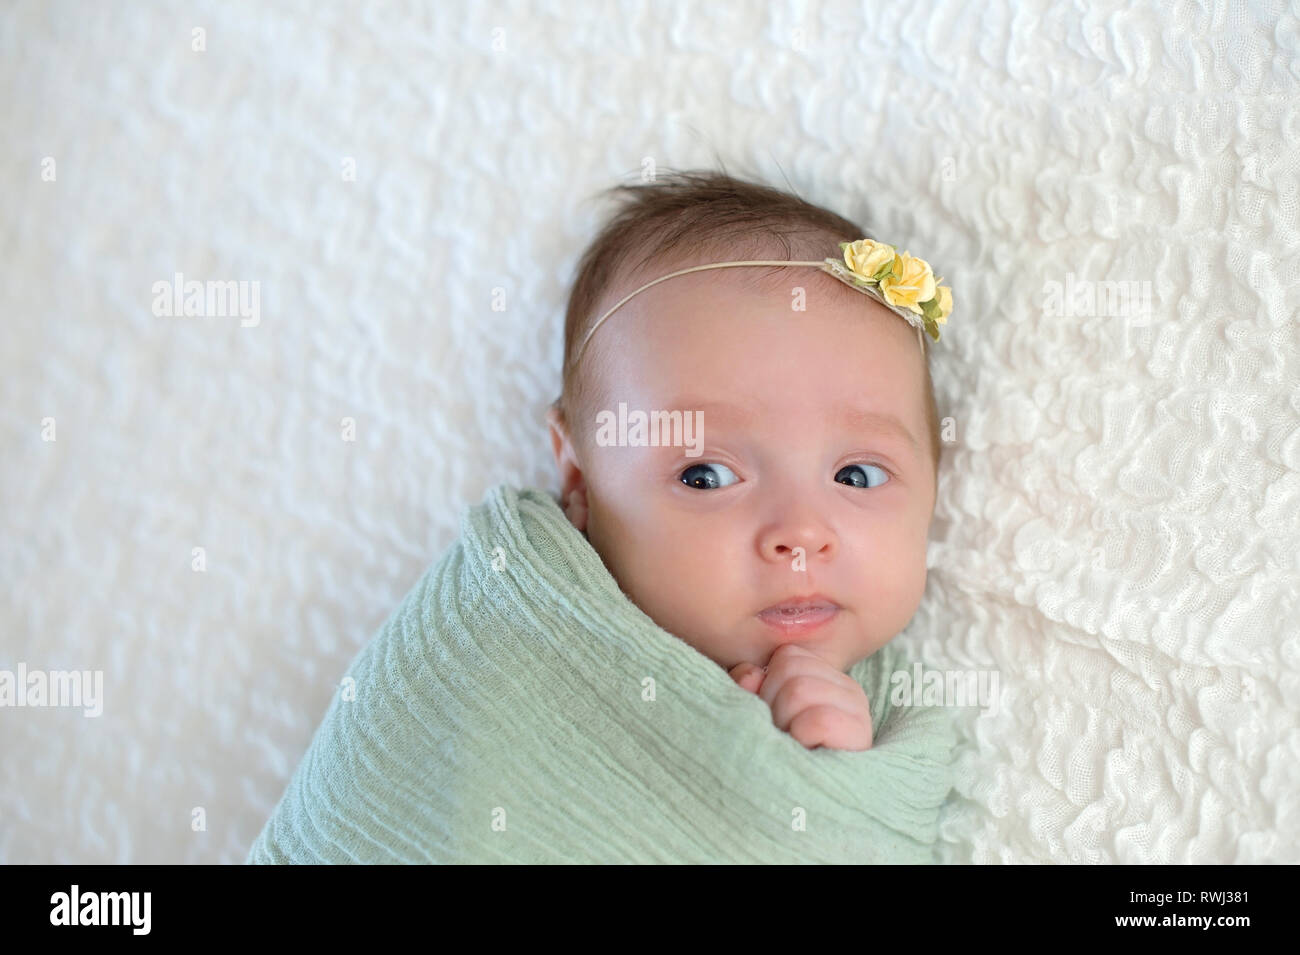 Alert einen Monat altes Baby girl Gepuckte in einem Mintgrüne wickeln. Sie hat eine lustige Ausdruck auf ihrem Gesicht. Stockfoto